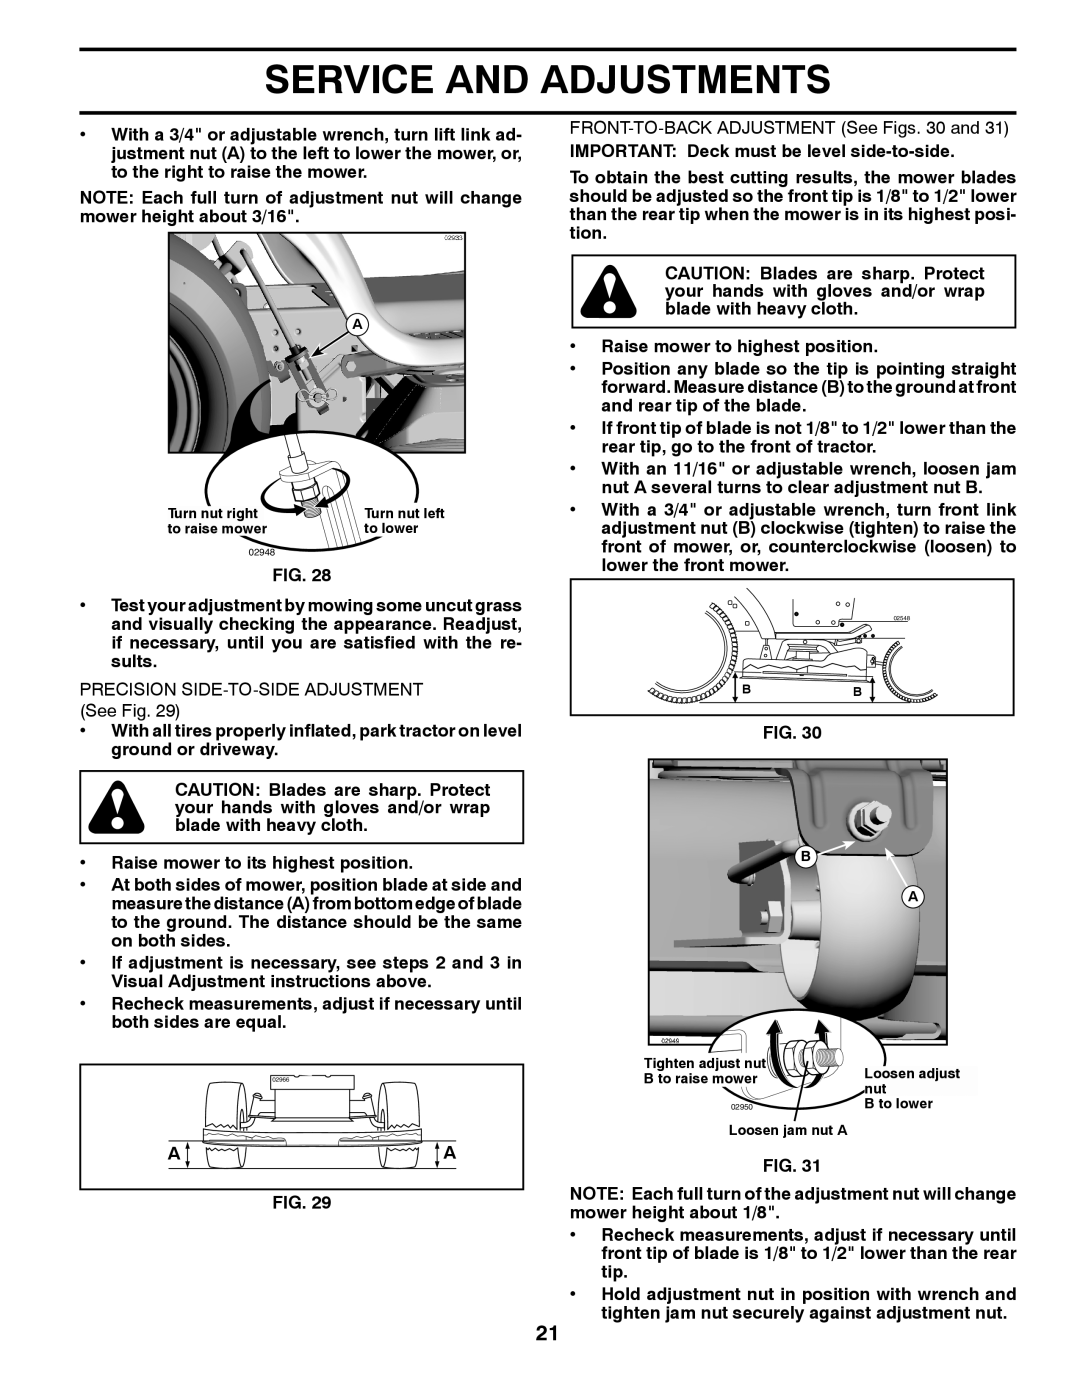 Poulan 417920 manual Service And Adjustments, PRECISION SIDE-TO-SIDE ADJUSTMENT See Fig, Turn nut left, Loosen adjust 